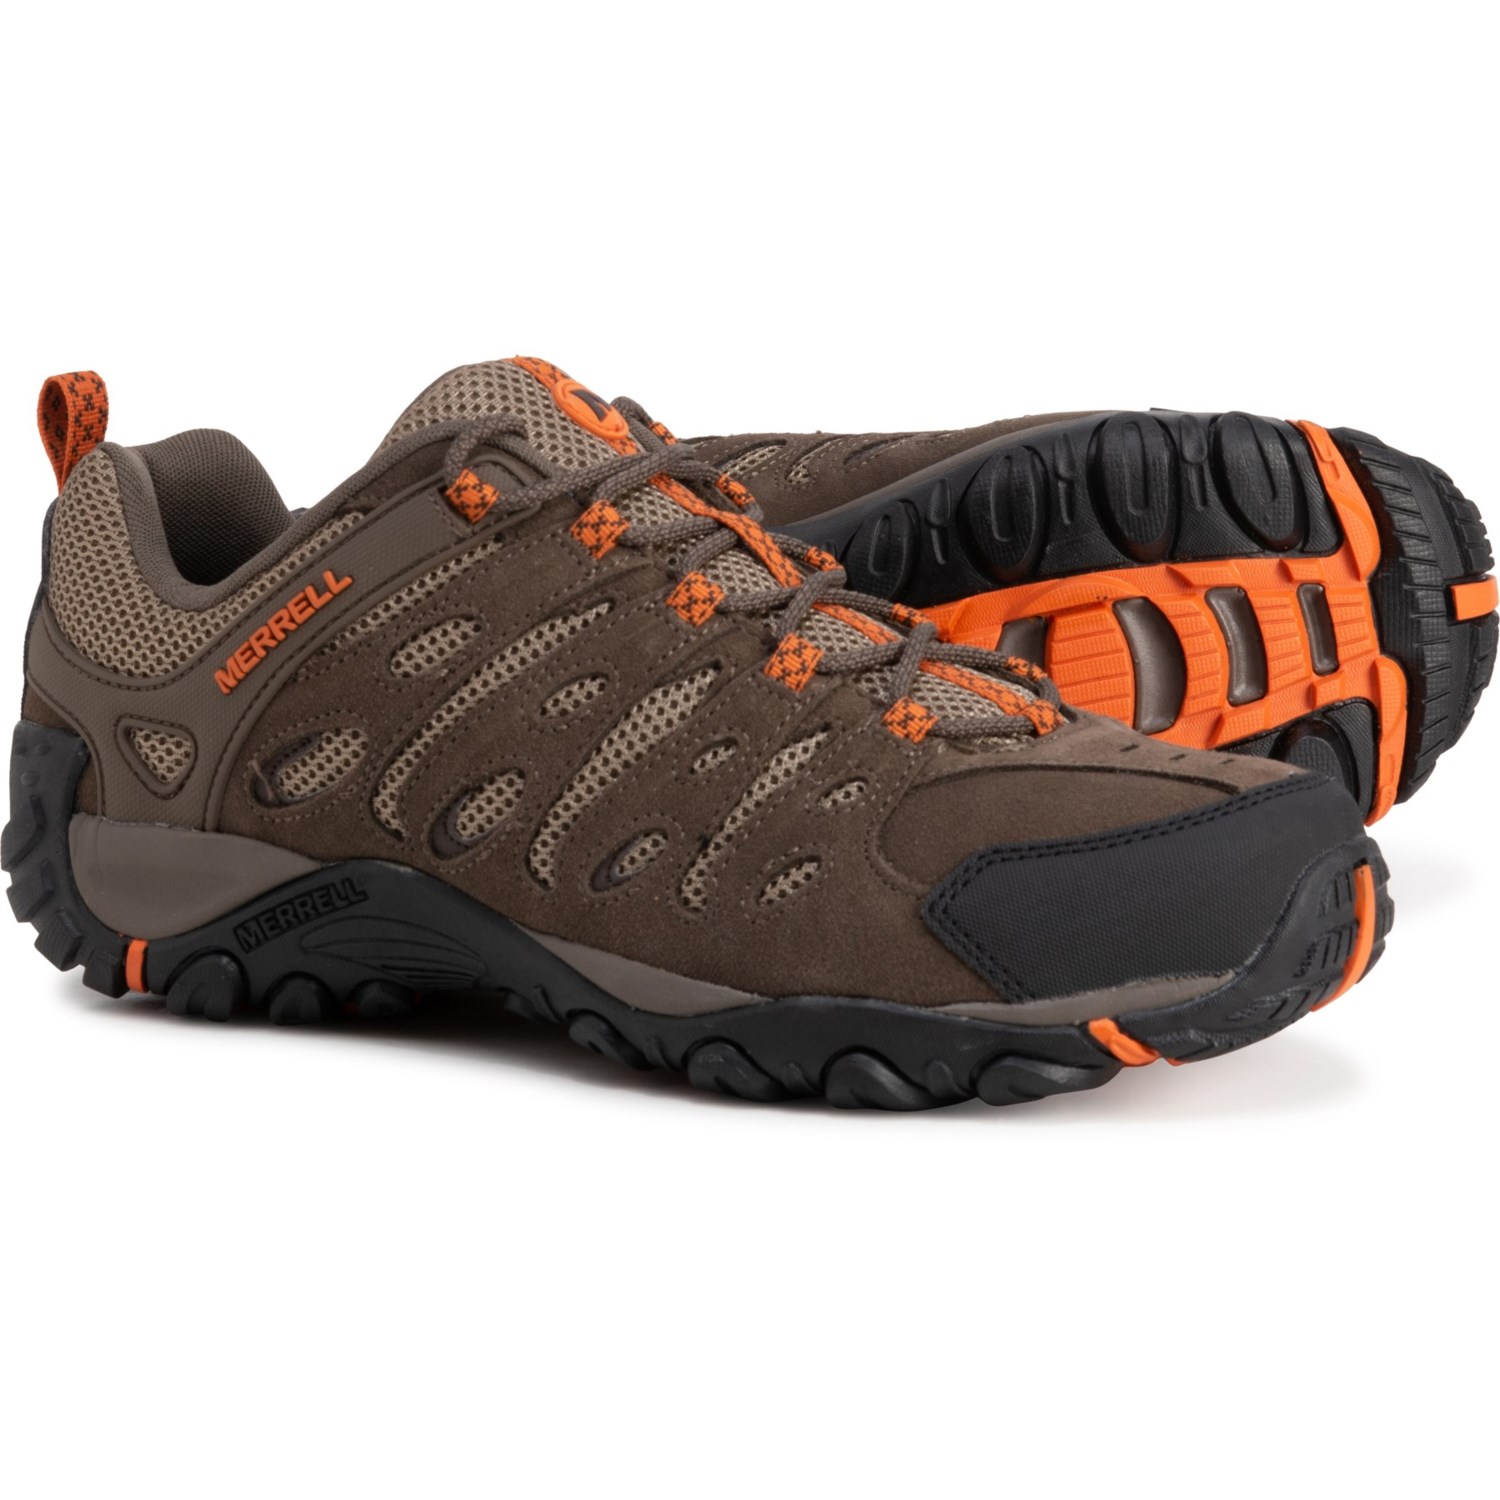 Merrell Crosslander 2 Hiking Shoes (For Men) - Save 33%